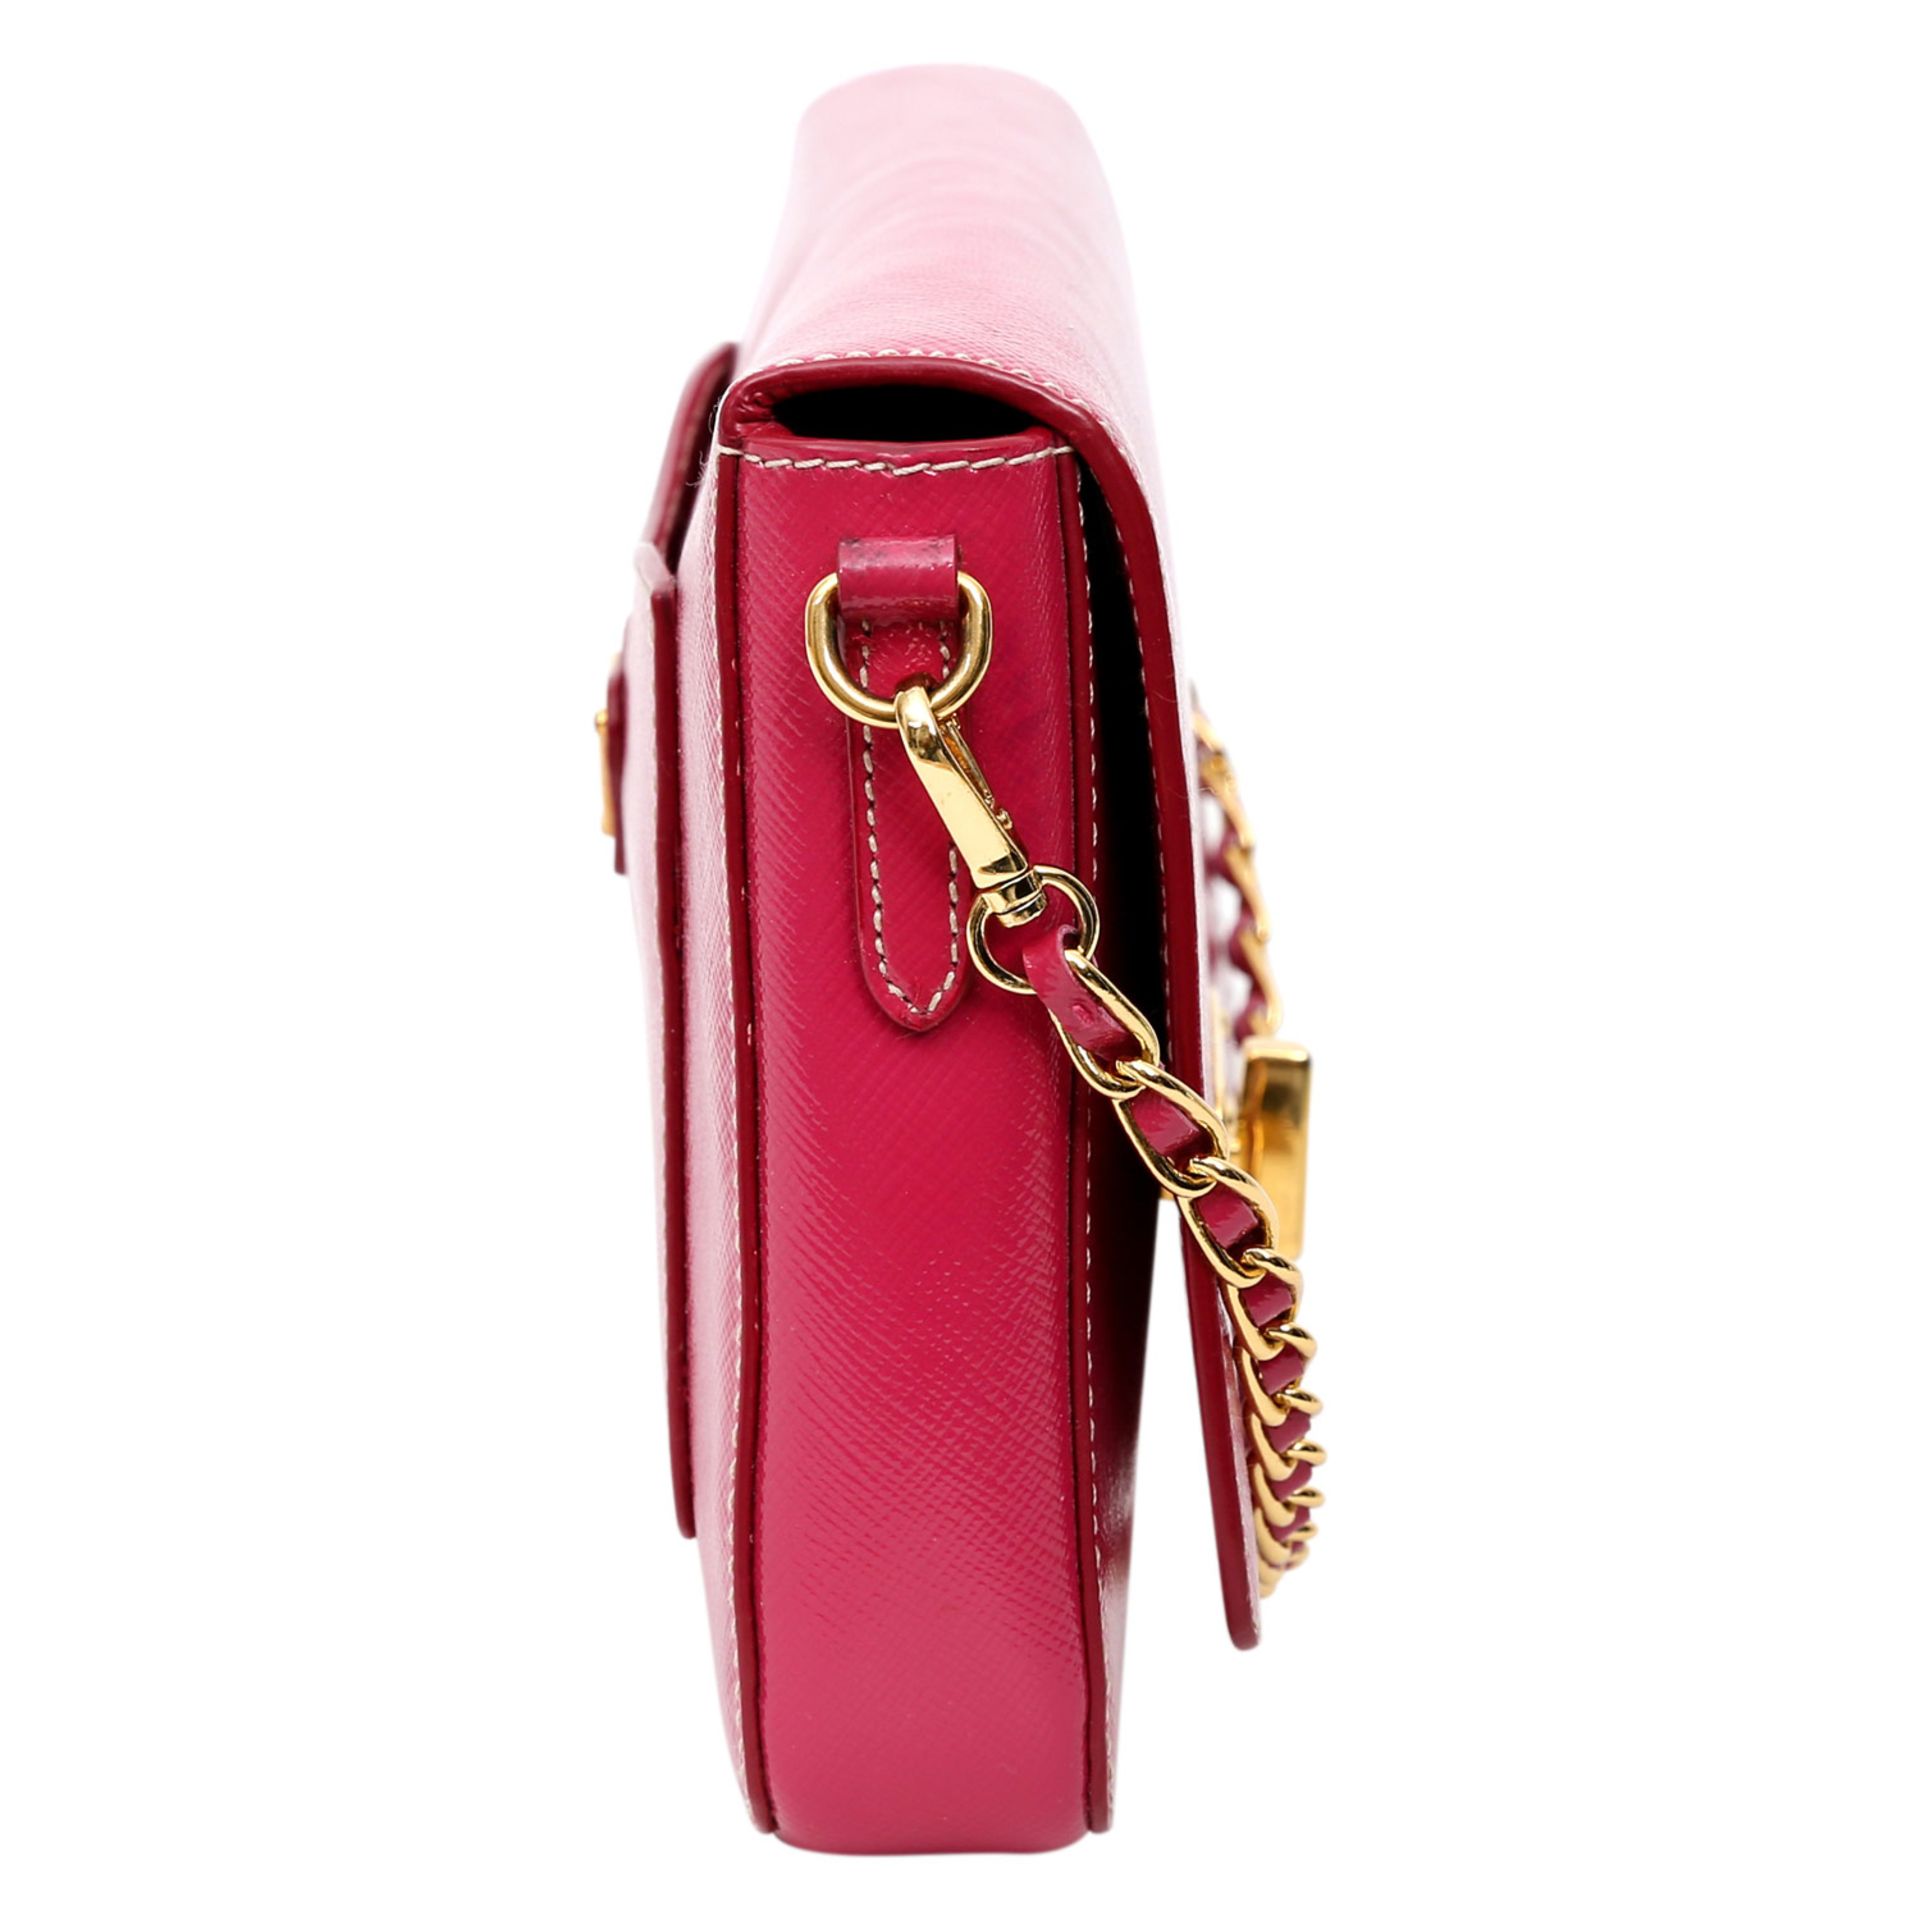 PRADA exklusive Umhängetasche. Saffiano-Lackleder in Pink mit goldfarbener Hardware, Überschlag - Bild 6 aus 14